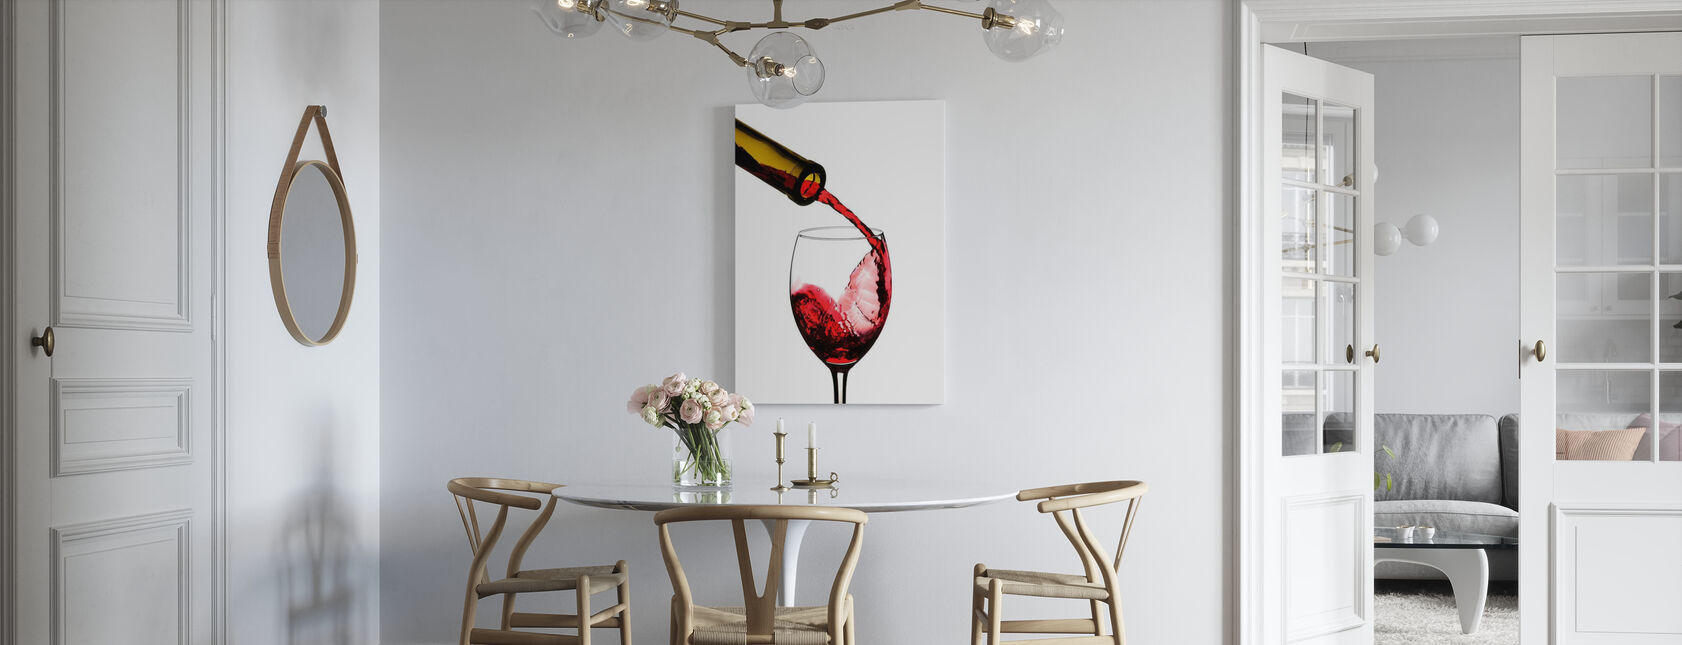 Vin Rouge Pour - Impression sur toile - Cuisine